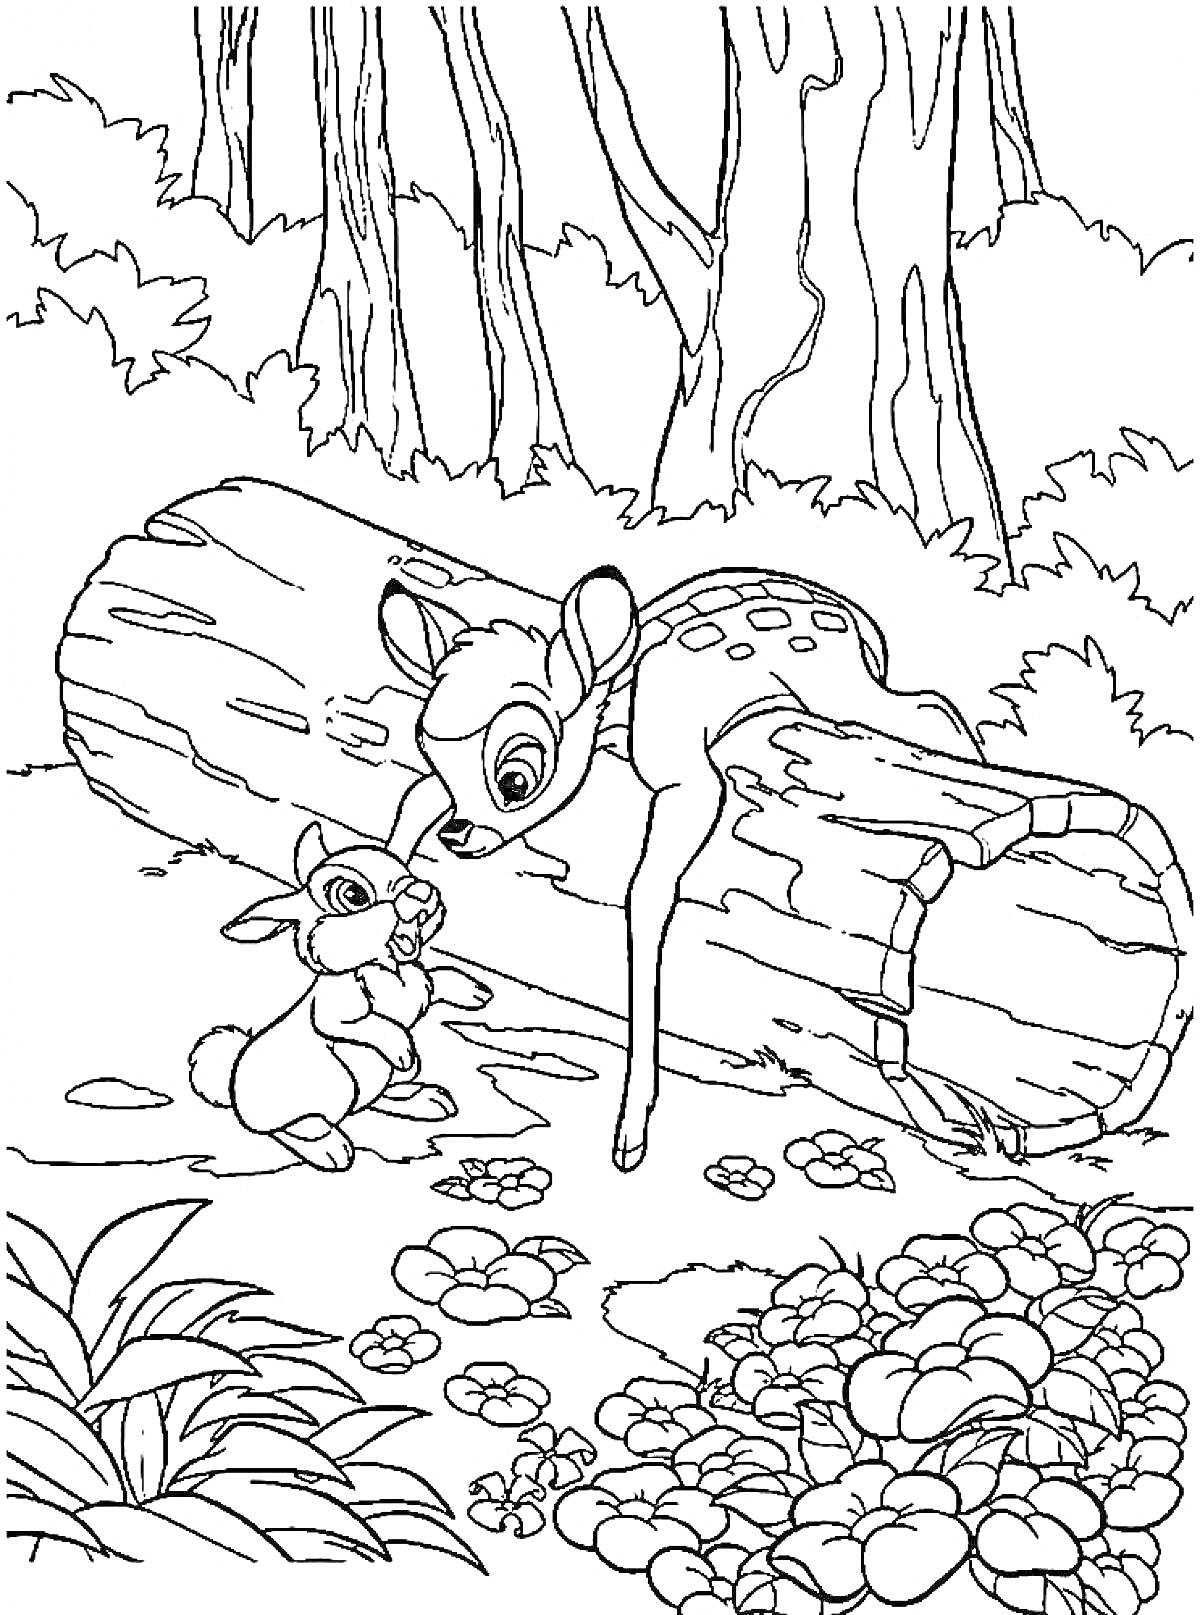 Бэмби и кролик у поваленного дерева в лесу